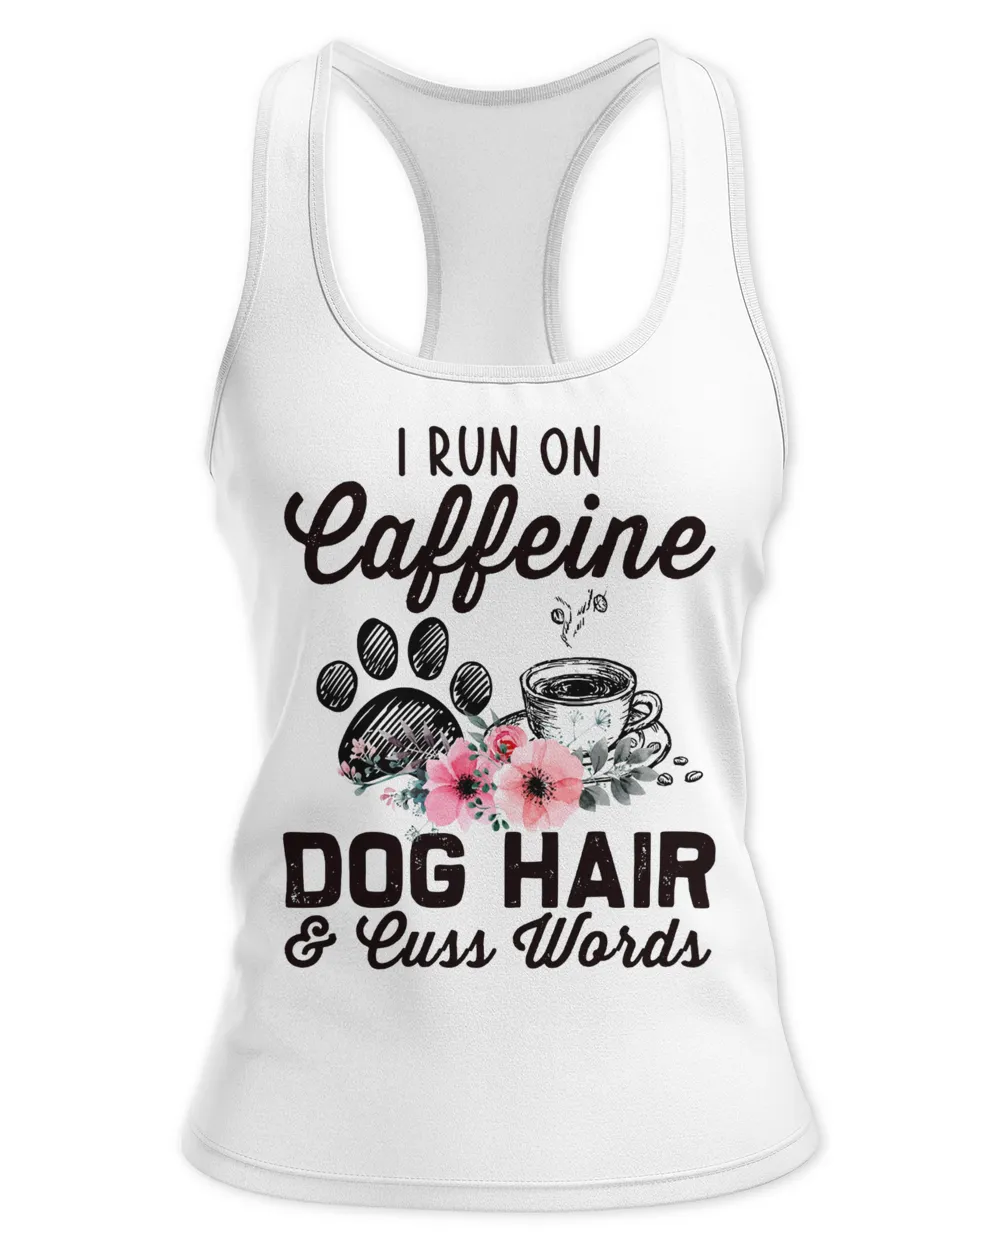 I Run On Caffeine Dog Hair And Cuss Words